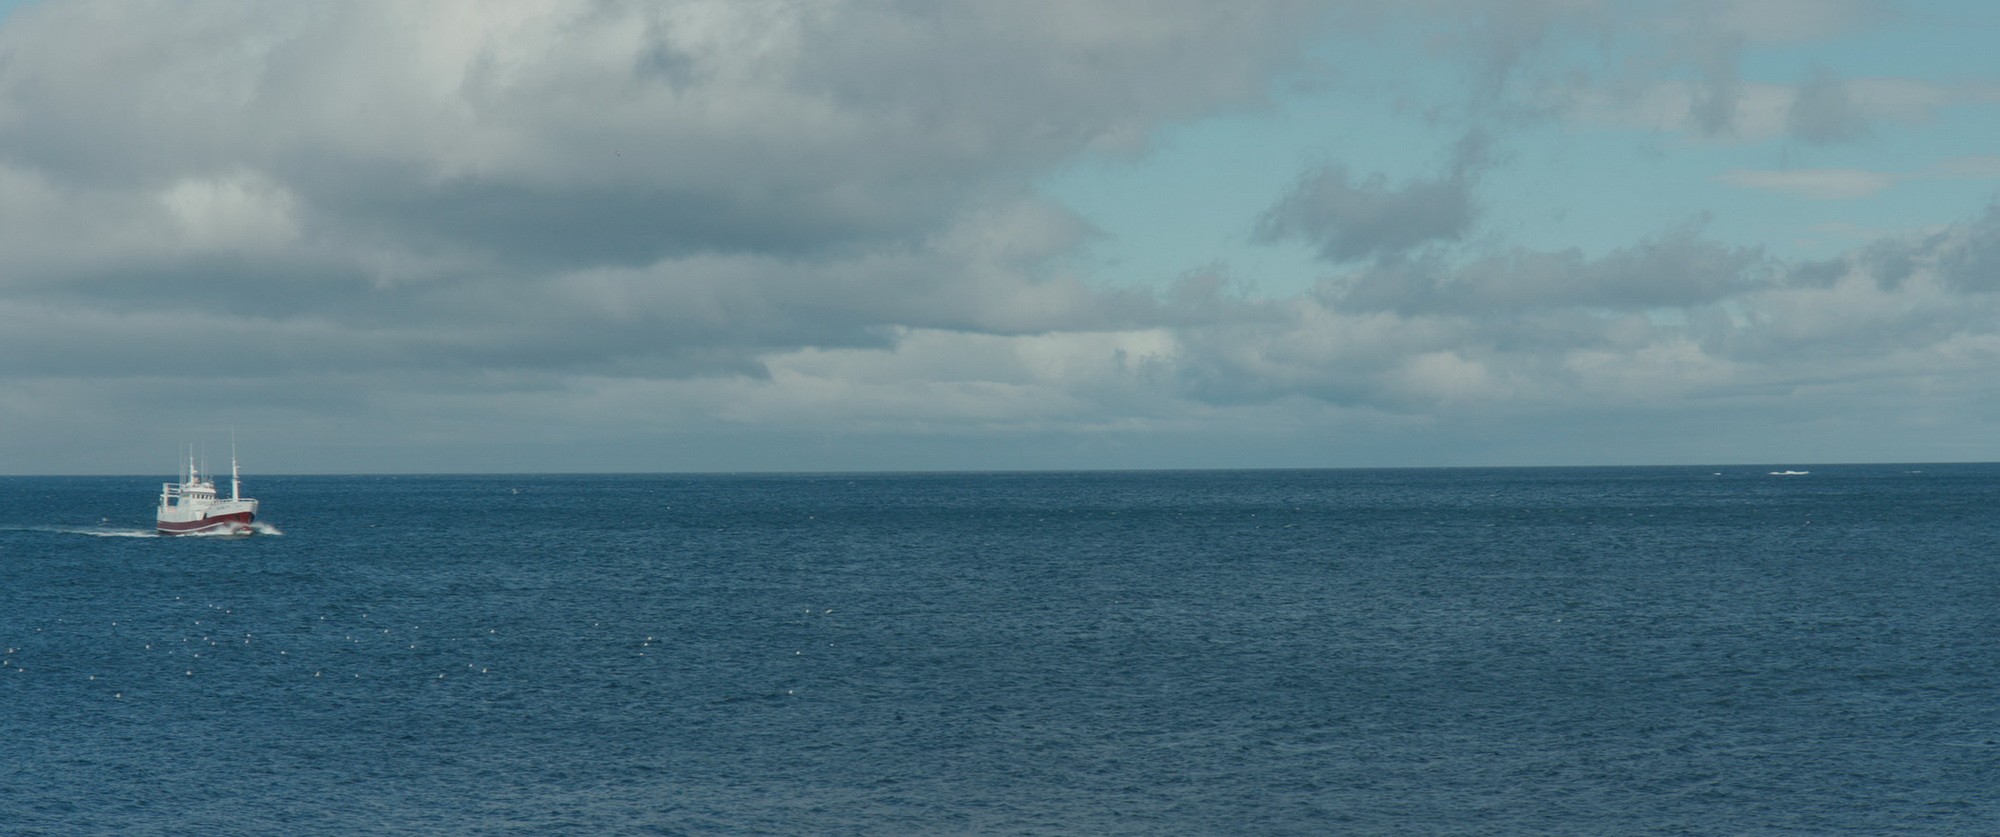 Лили и море: кадр N210312